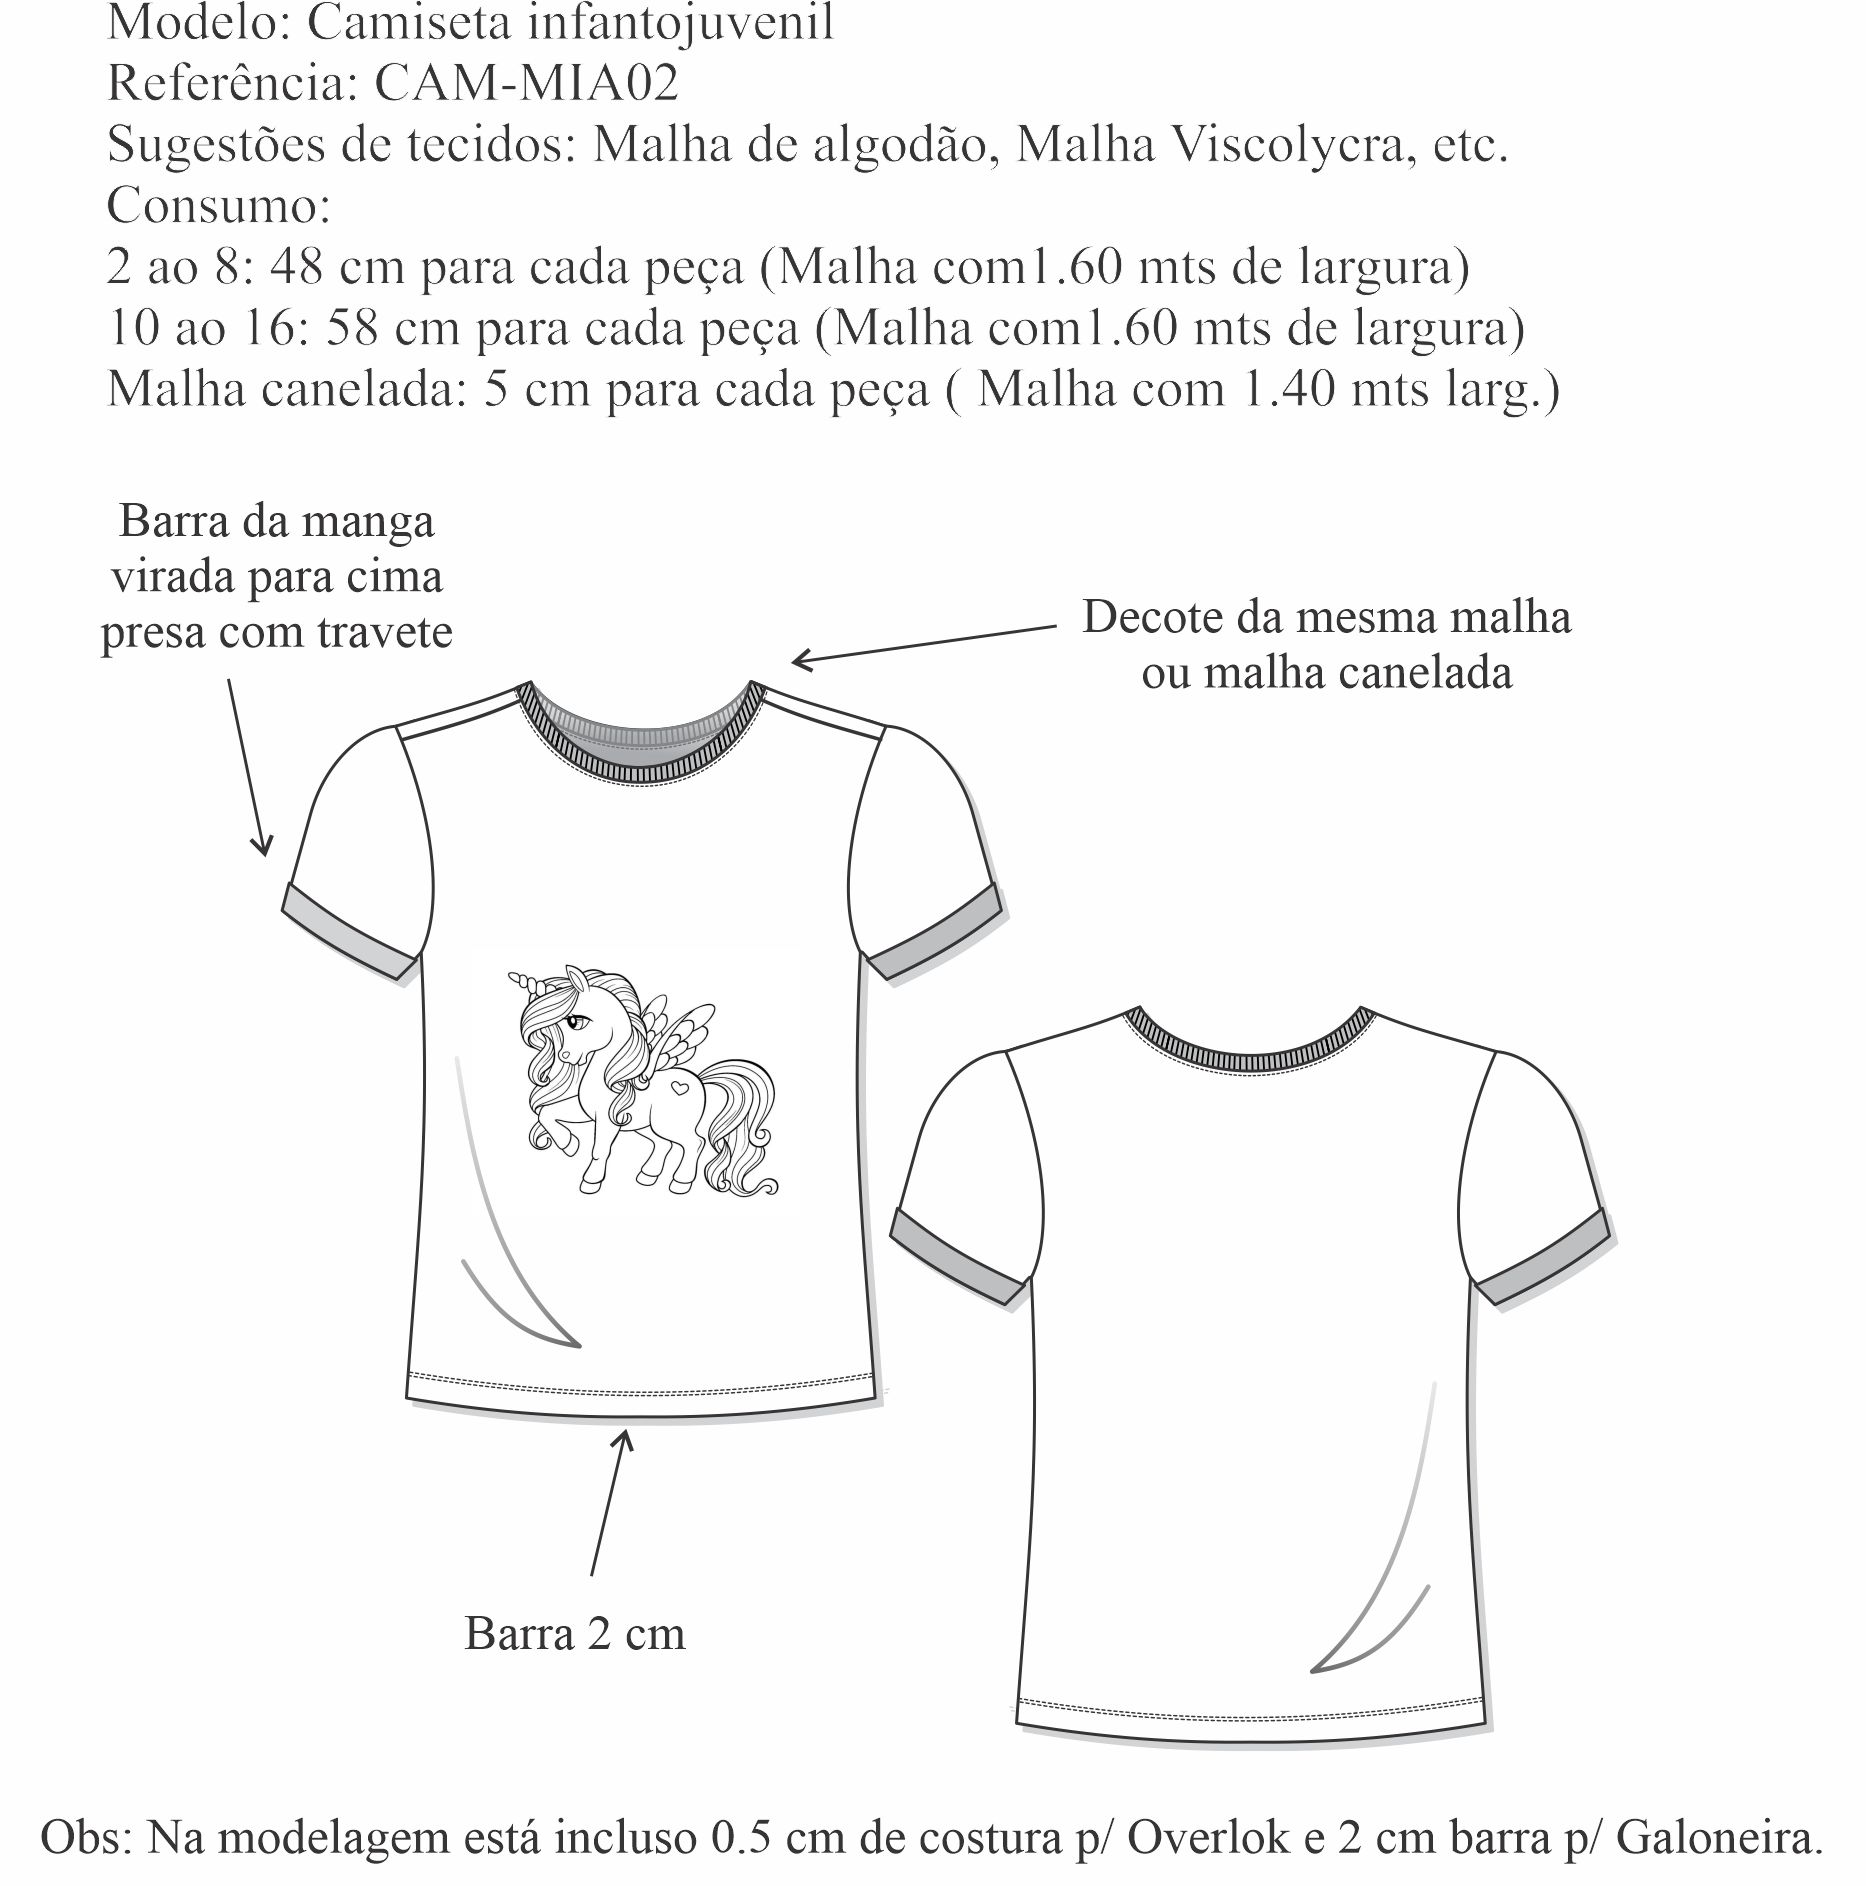 Camiseta infantojuvenil (CAM-MIA02) - Foto 1